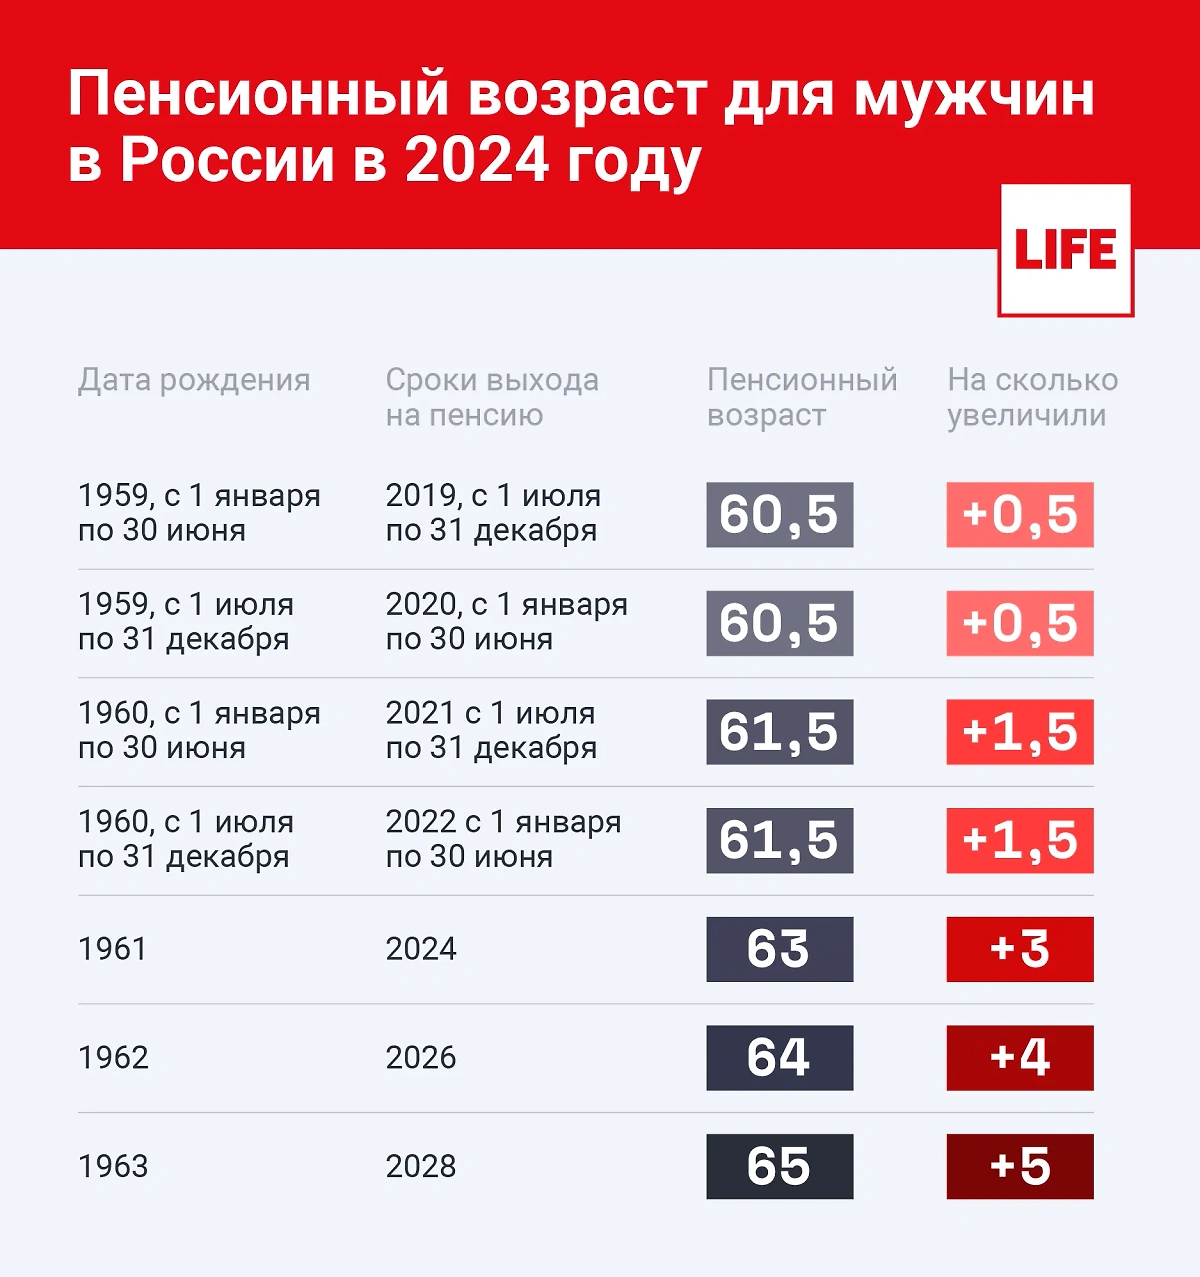 Пенсионный возраст для мужчин в России в 2024 году. Инфографика © Life.ru